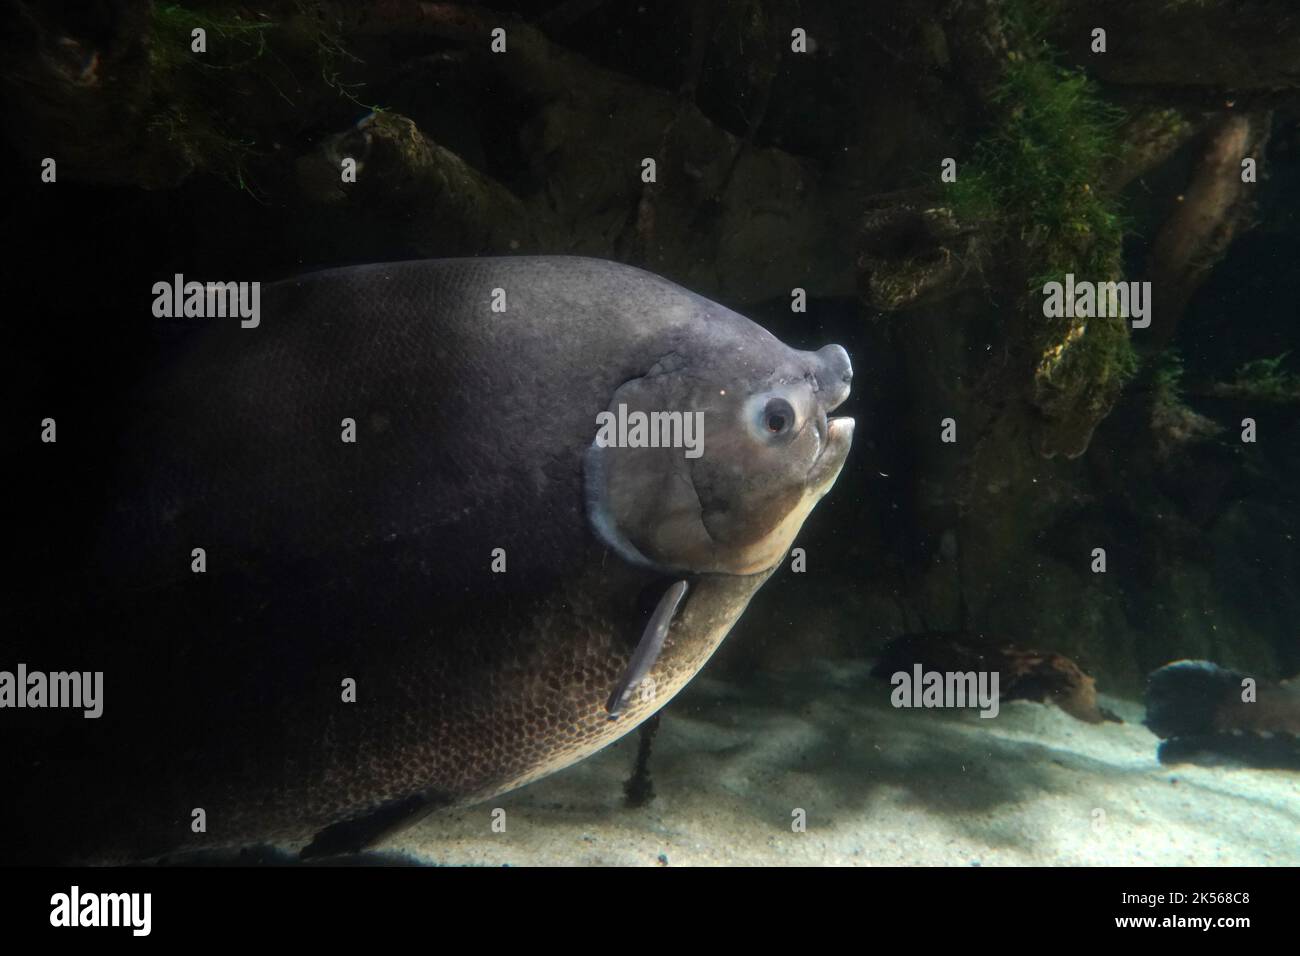 pirapitinga fish underwater close up portrait Stock Photo